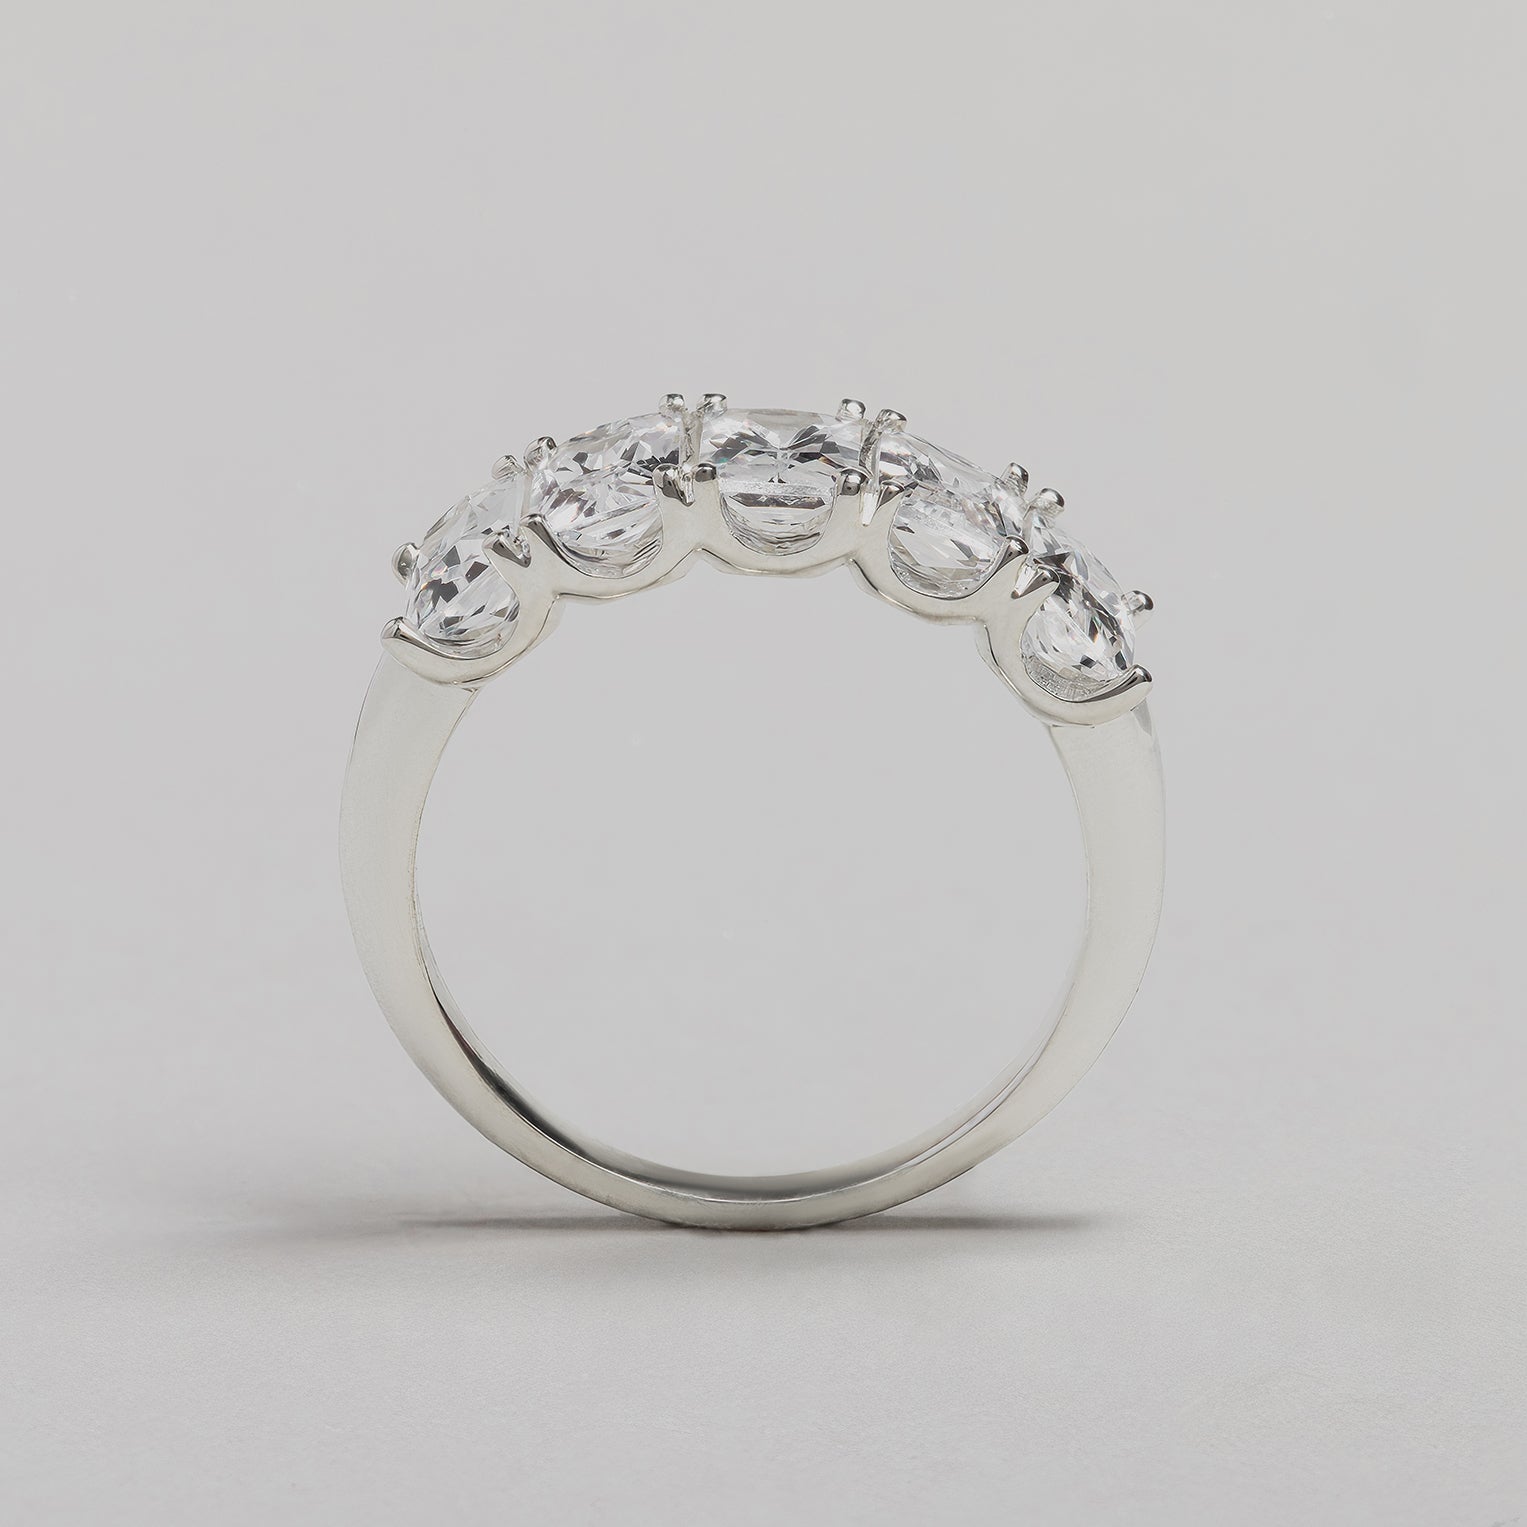 Lab-grown 5-Stone Diamond Ring